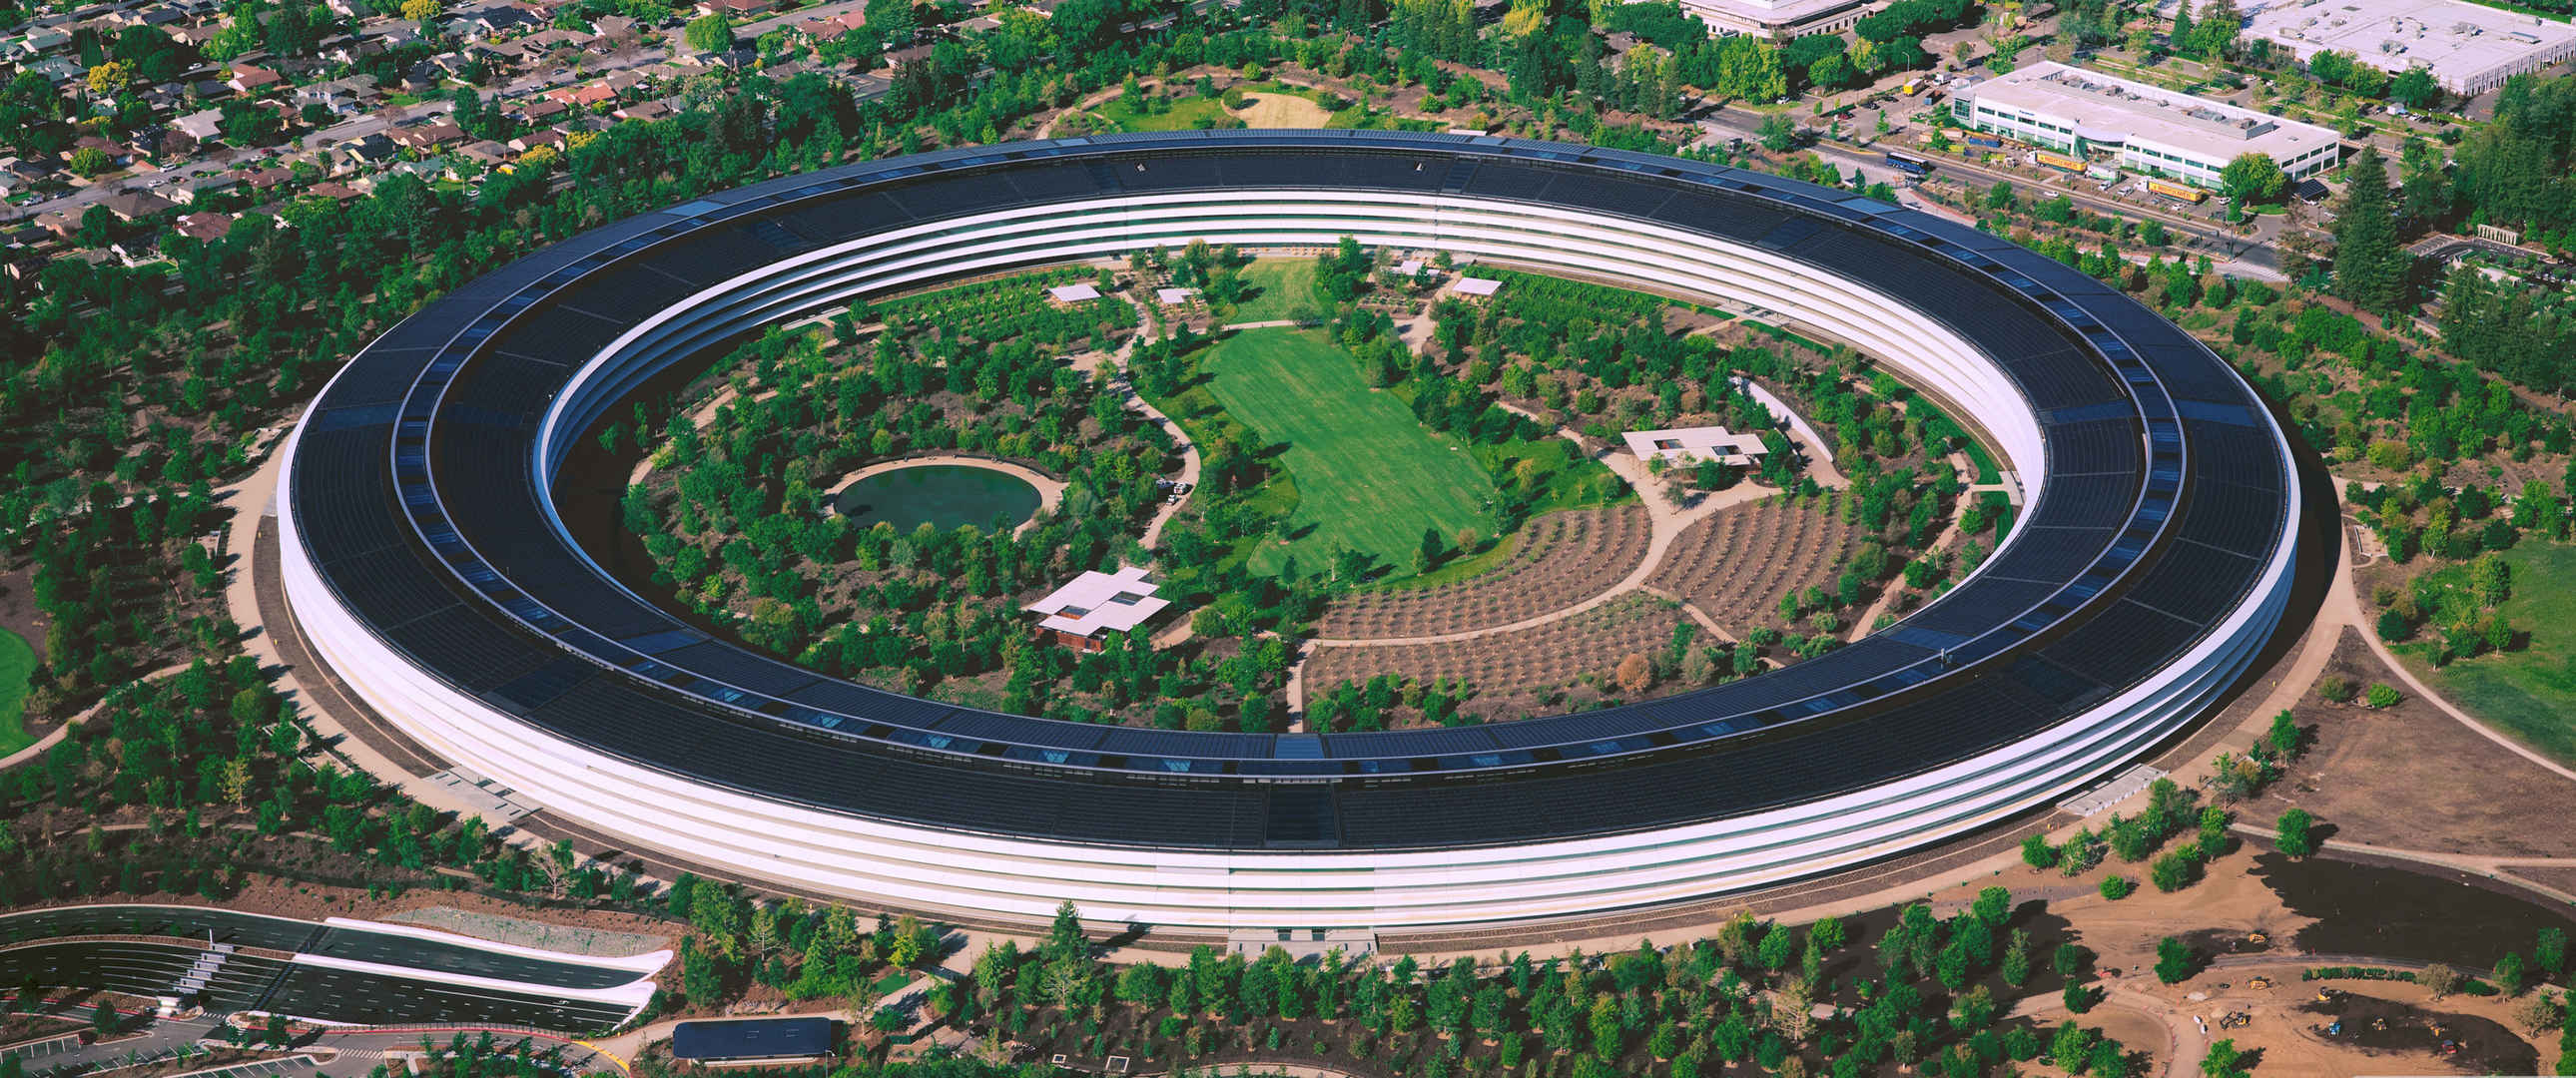 Apple Park 苹果飞船总部大楼建筑壁纸高清大图